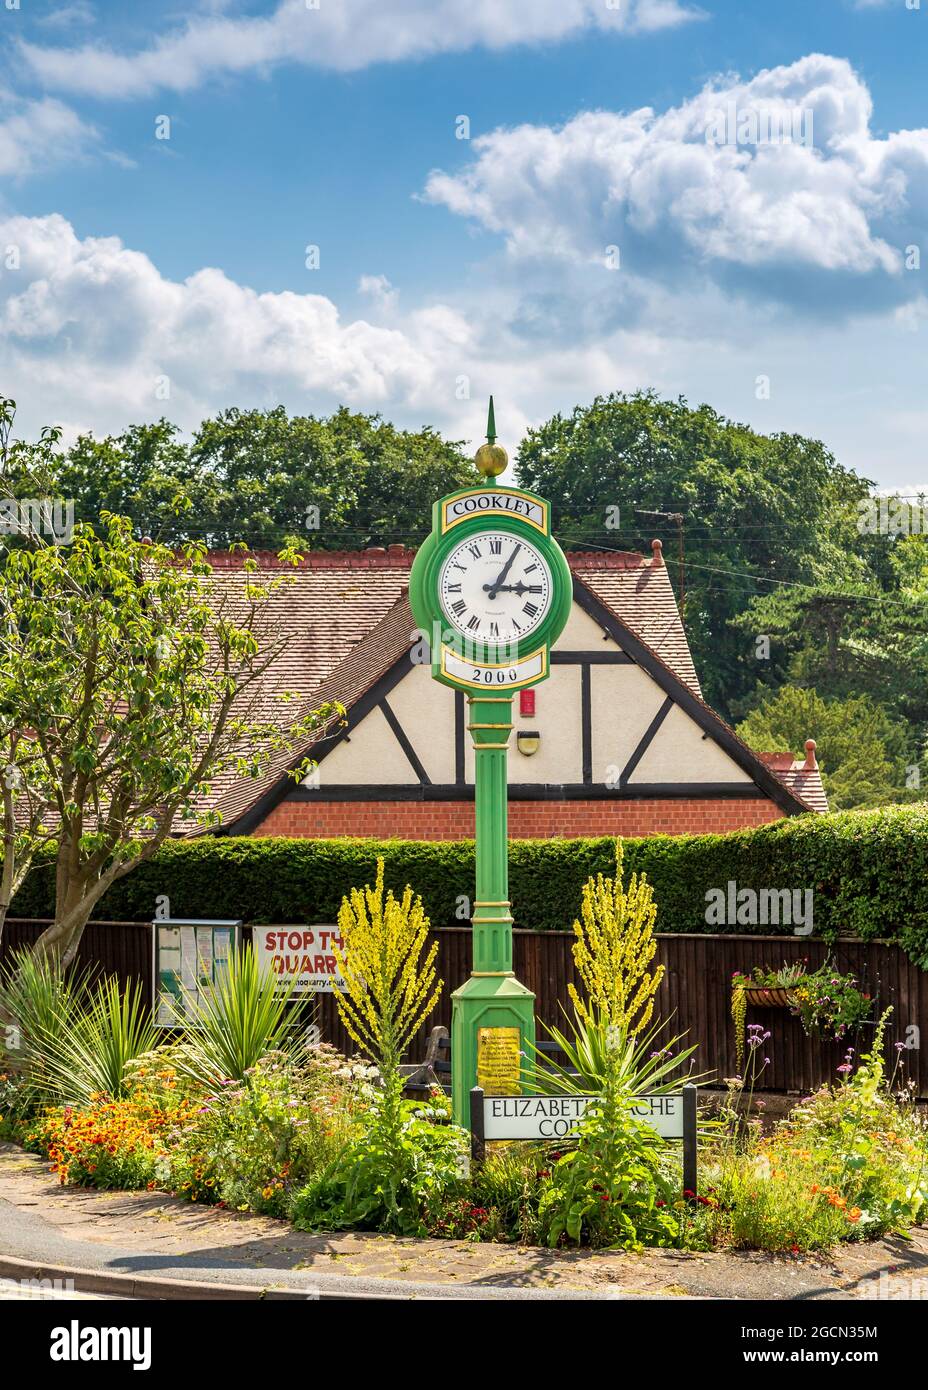 Die Uhr an Elizabeth Bache Corner in Cookley Village, Worcestershire, England. Stockfoto